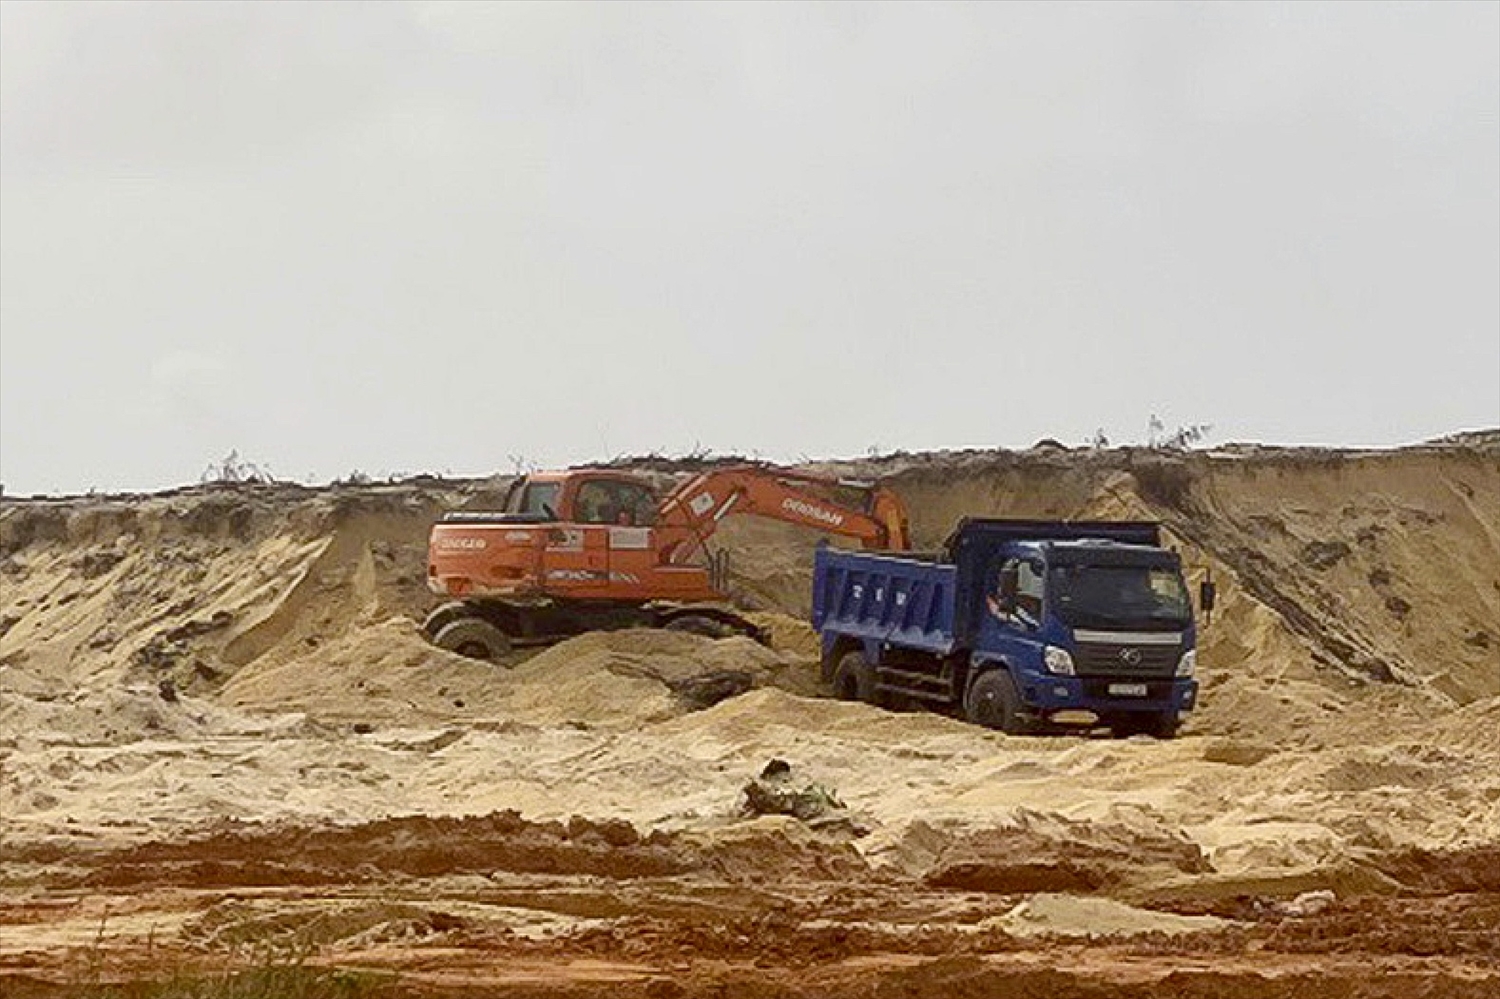 Hành vi khai thác cát trái phép đã bị Tranh tra Sở Tài nguyên và Môi trường Quảng Bình xử phạt nặng       